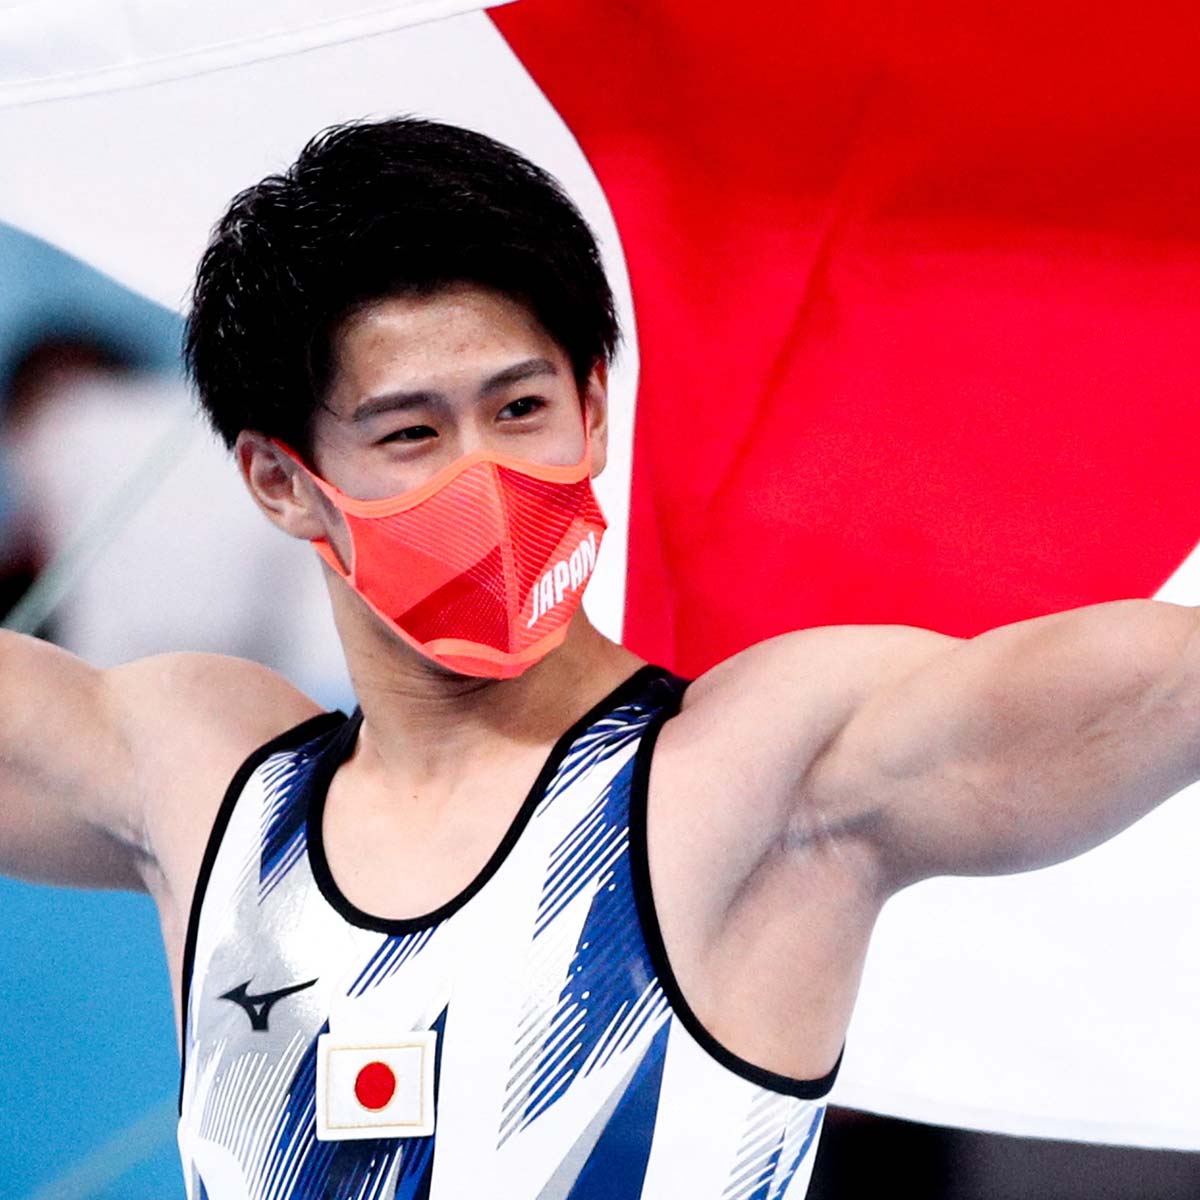 東京オリンピック 日本の10代アスリート注目選手ランキング 9 10位 ランキングー